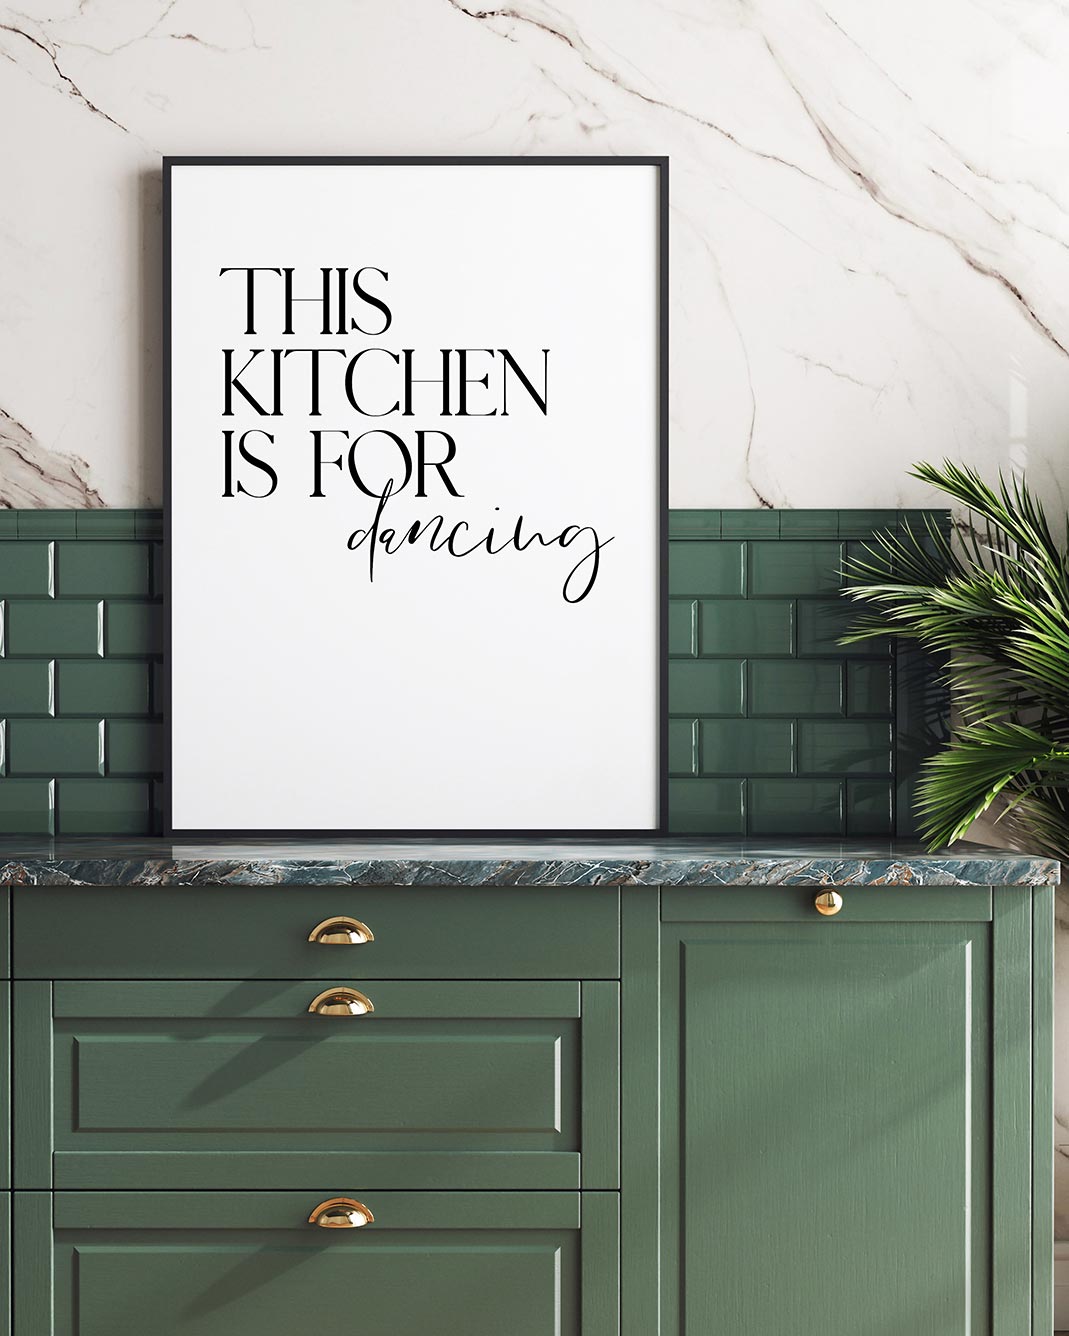 This kitchen is for dancing Poster im schwarzen Rahmen aufgestellt in einer grünen Küche